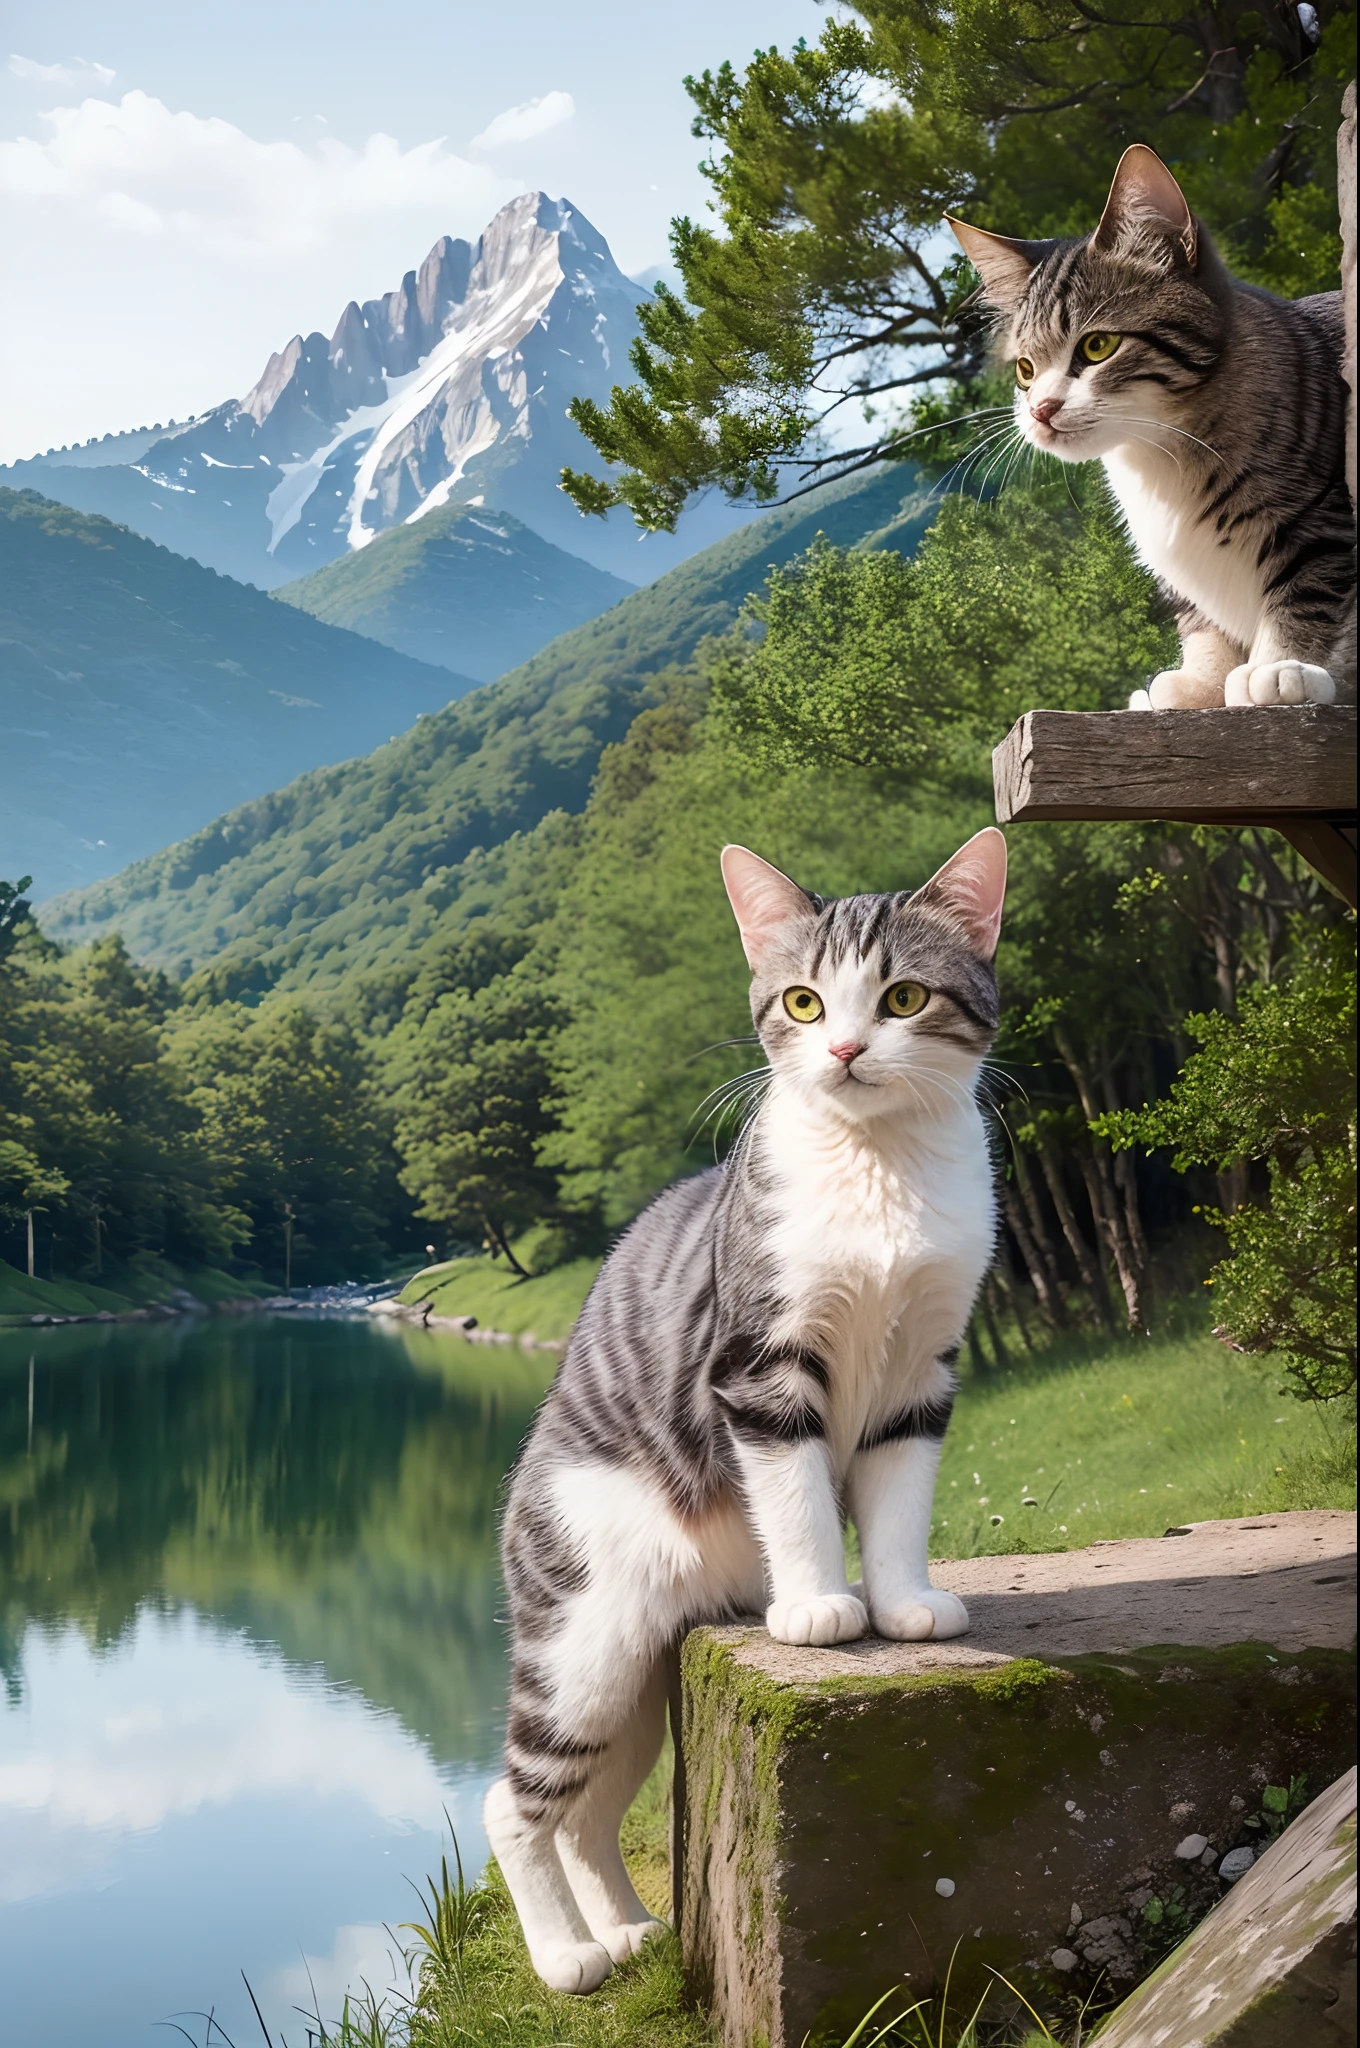 ((頂級品質、傑作、摄影写实主义:1.4、8K))、後面有山和湖)、詳細的貓、精緻又漂亮的貓、美麗的風景